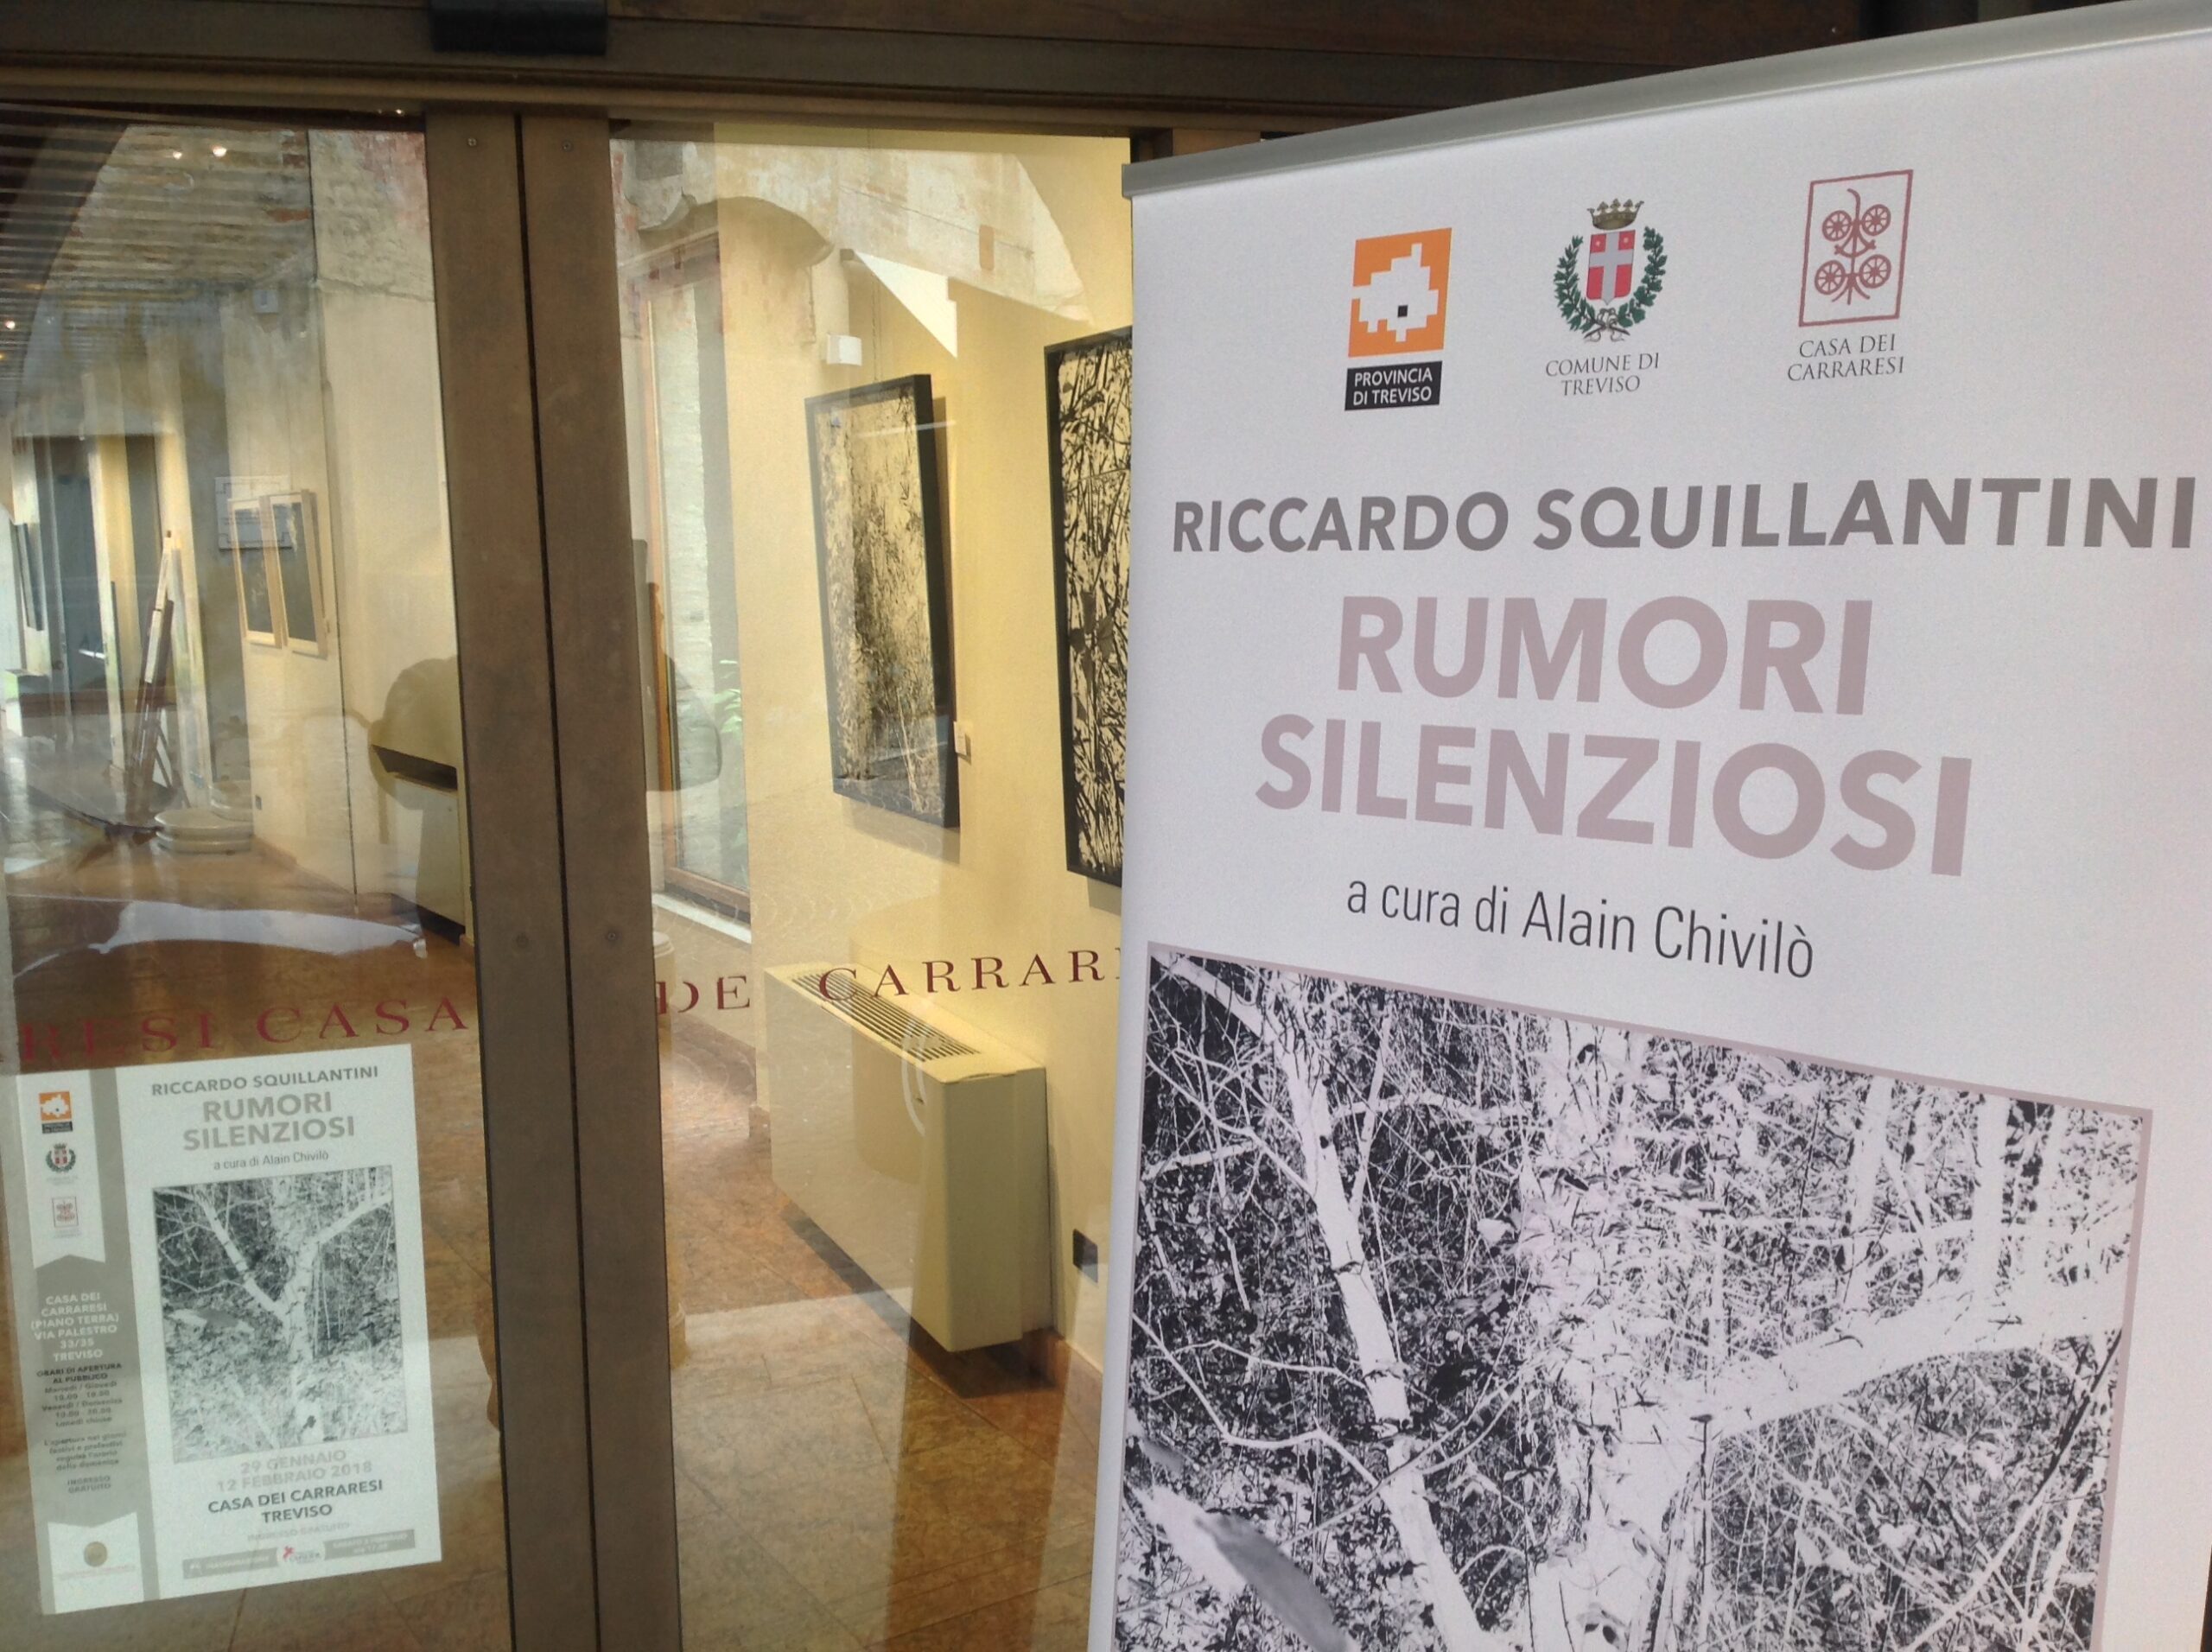 Riccardo Squillantini, Rumori silenziosi, mostra personale, a cura di Alain Chivilò_Casa dei Carraresi_Treviso